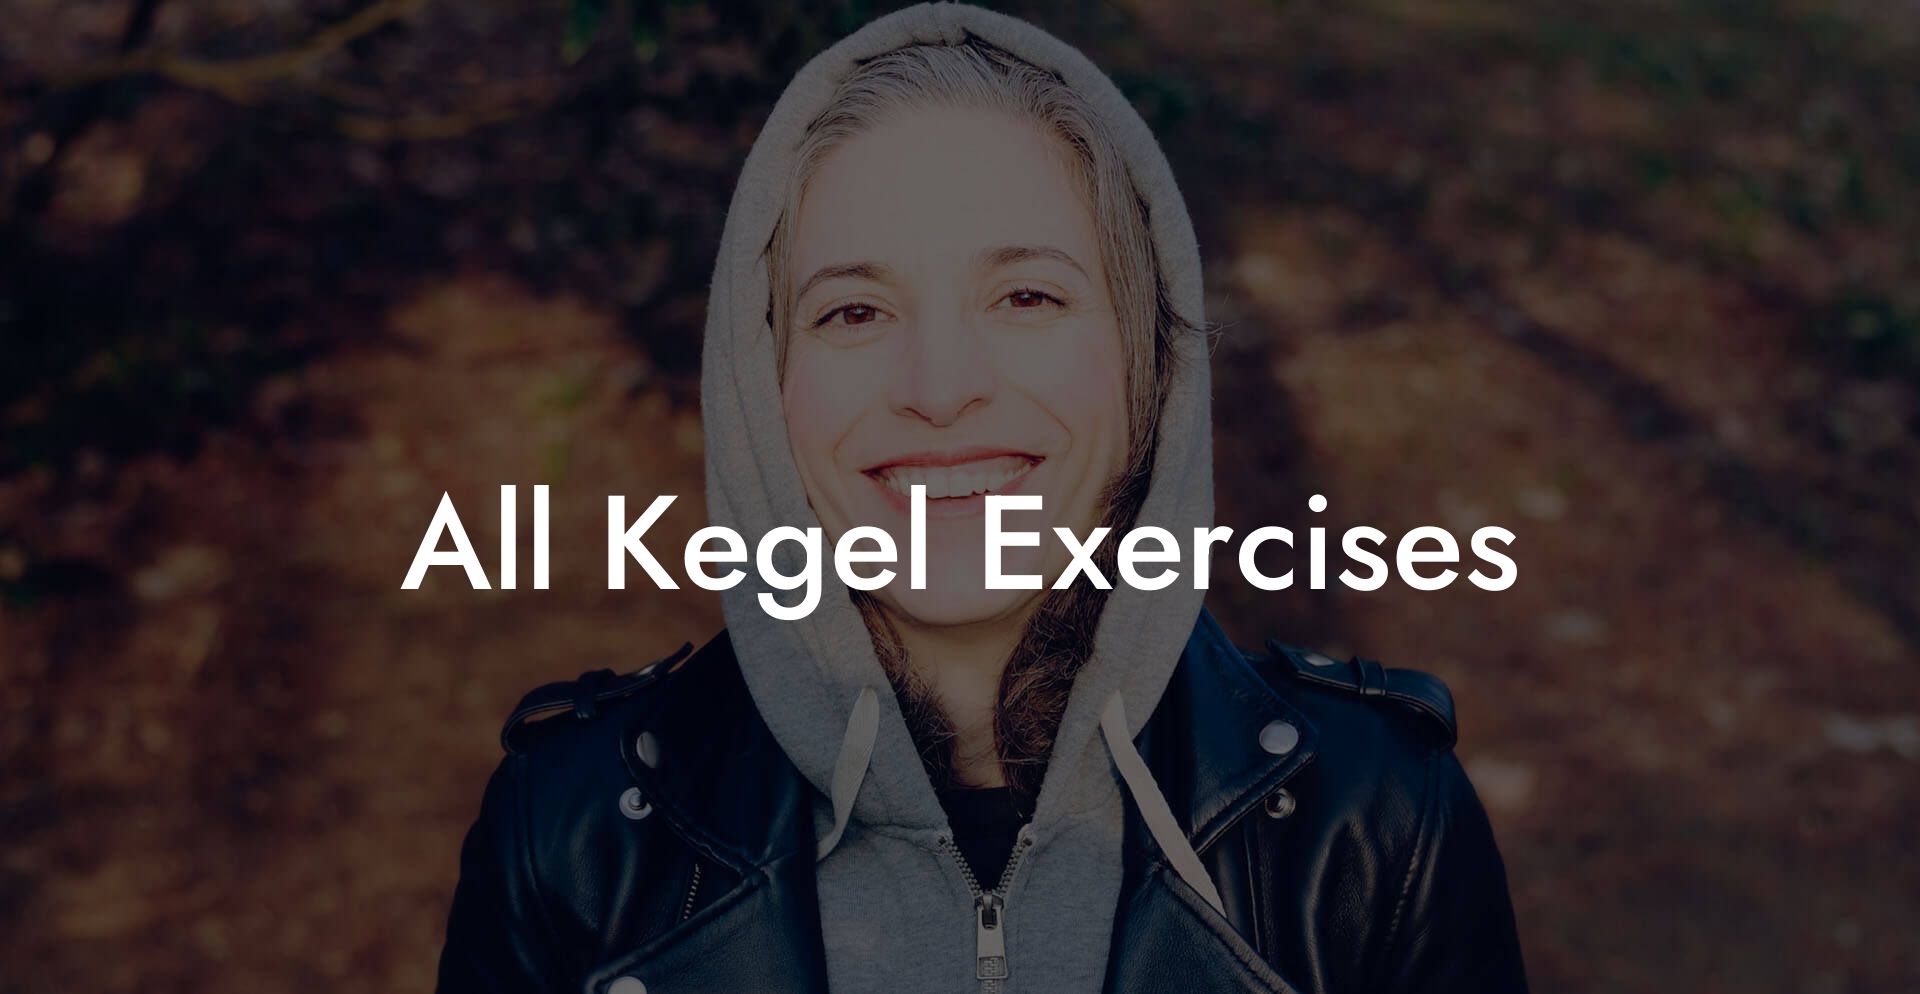 All Kegel Exercises